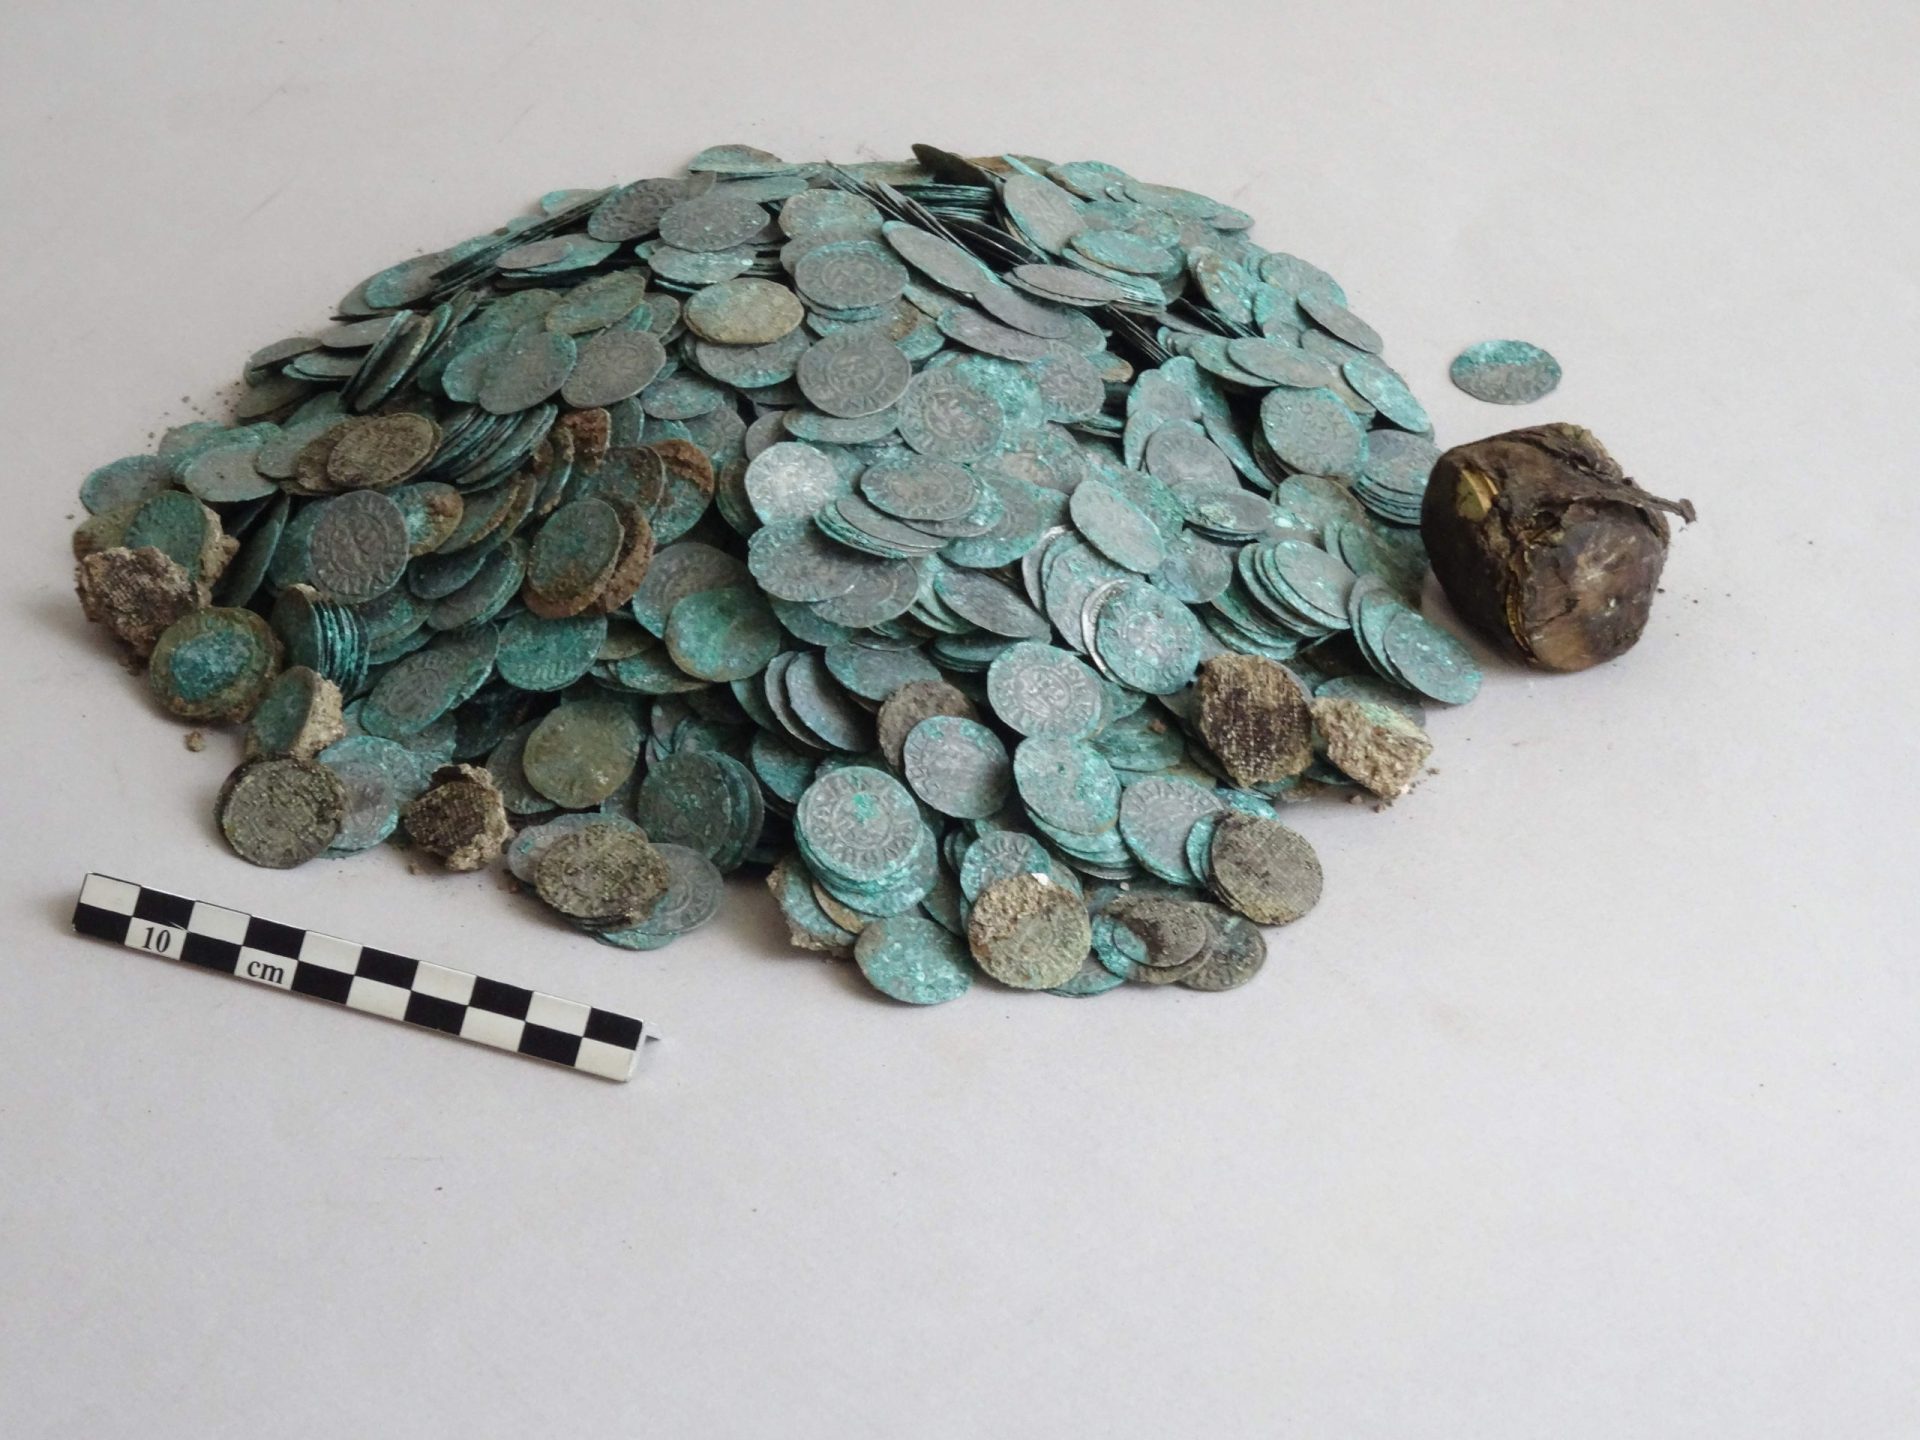 Tesouro medieval encontrado em França [fotogaleria]